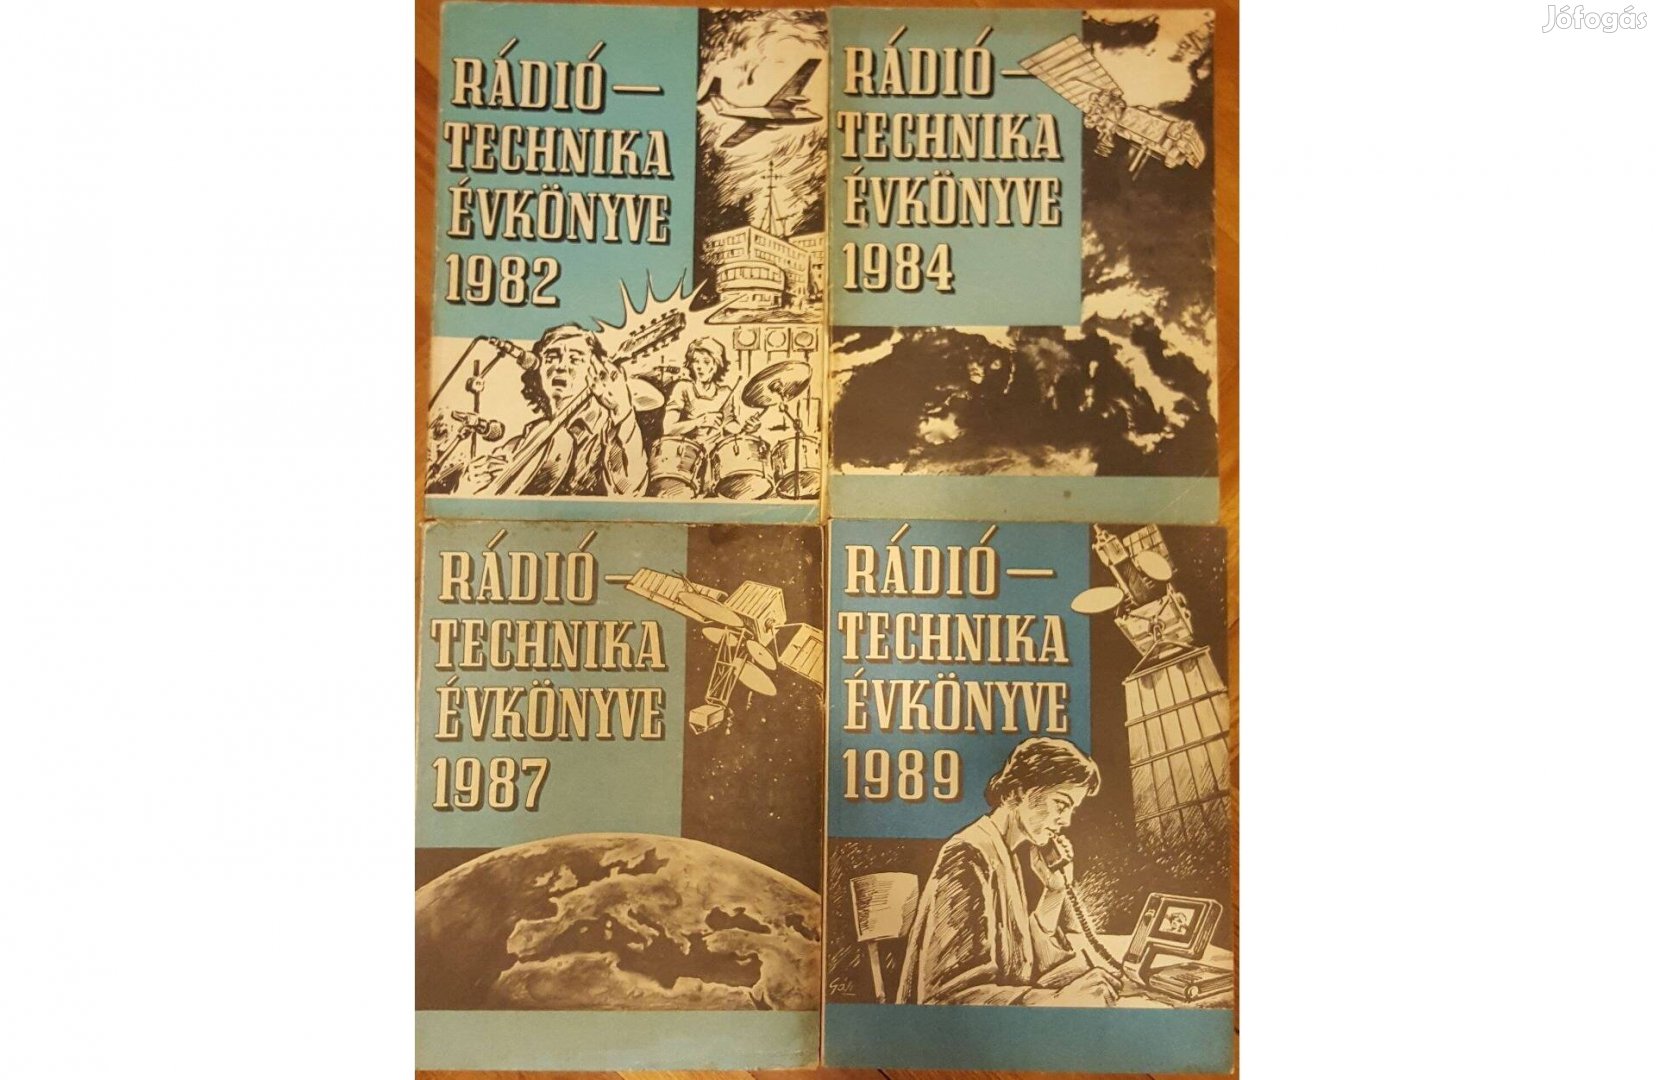 Rádiótechnika évkönyvek (1982, 1984, 1987, 1989)